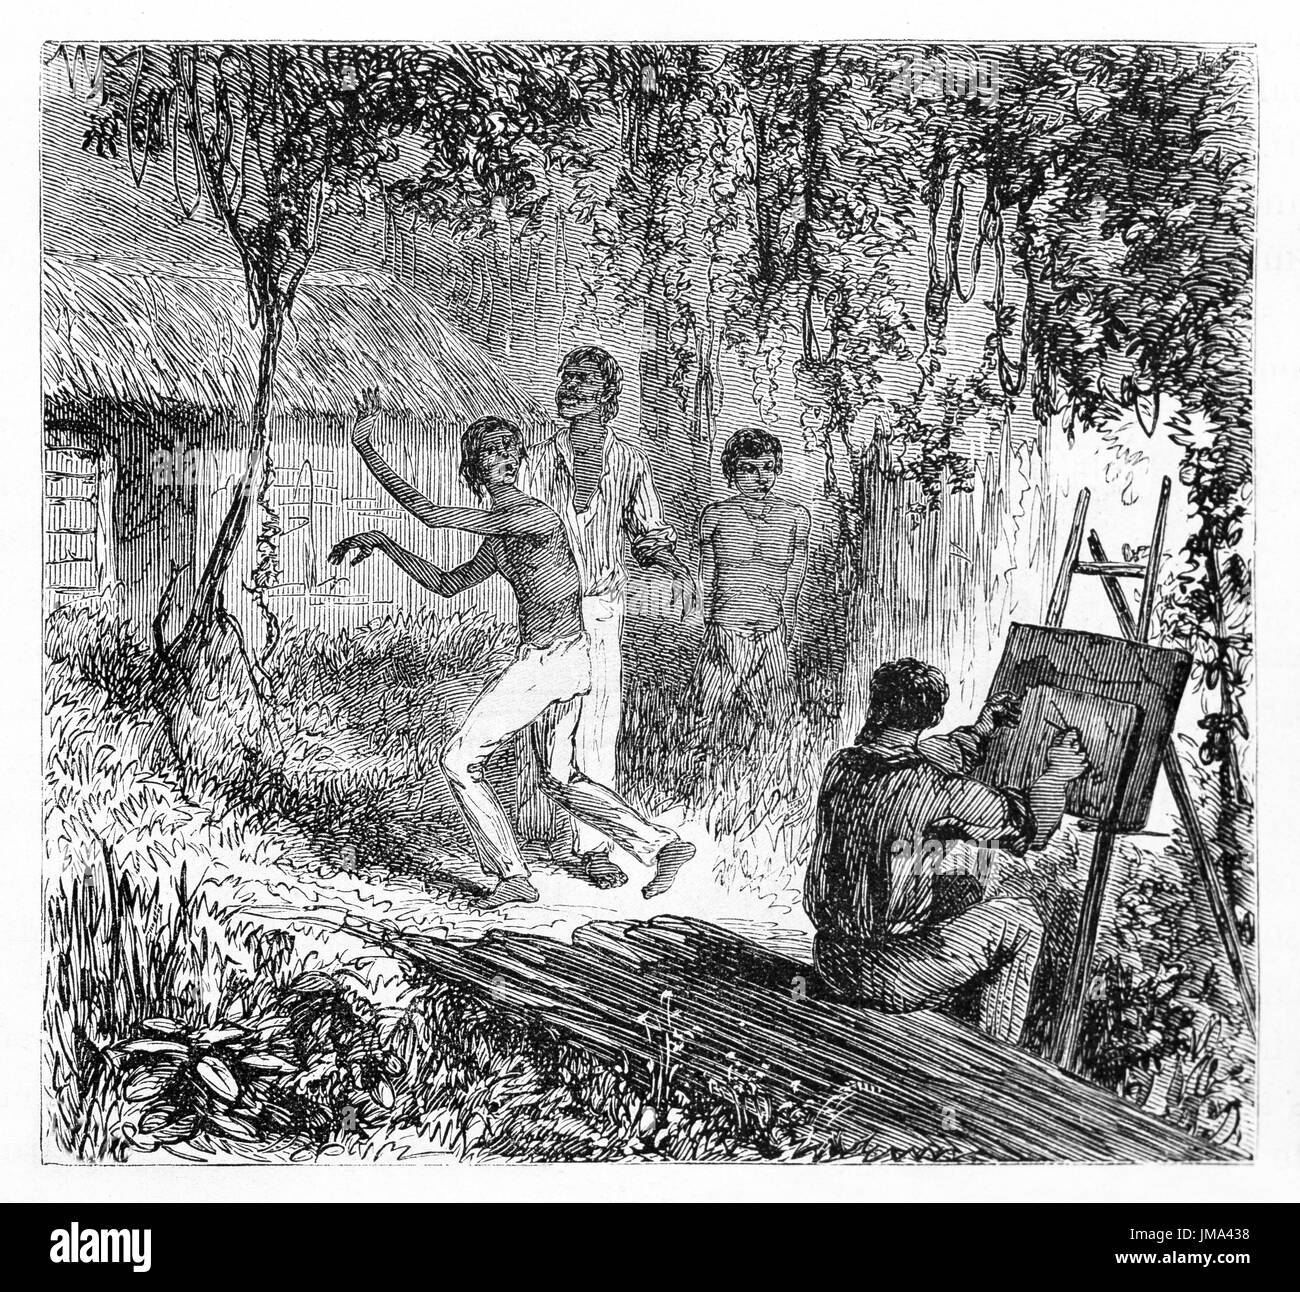 Mann, der mit Staffelei im Amazonas-Dschungel lebt und malt, vor staunenden amazonas-Menschen. Kunst von Riou, Board und Therington, Le Tour du Monde, 1861 Stockfoto